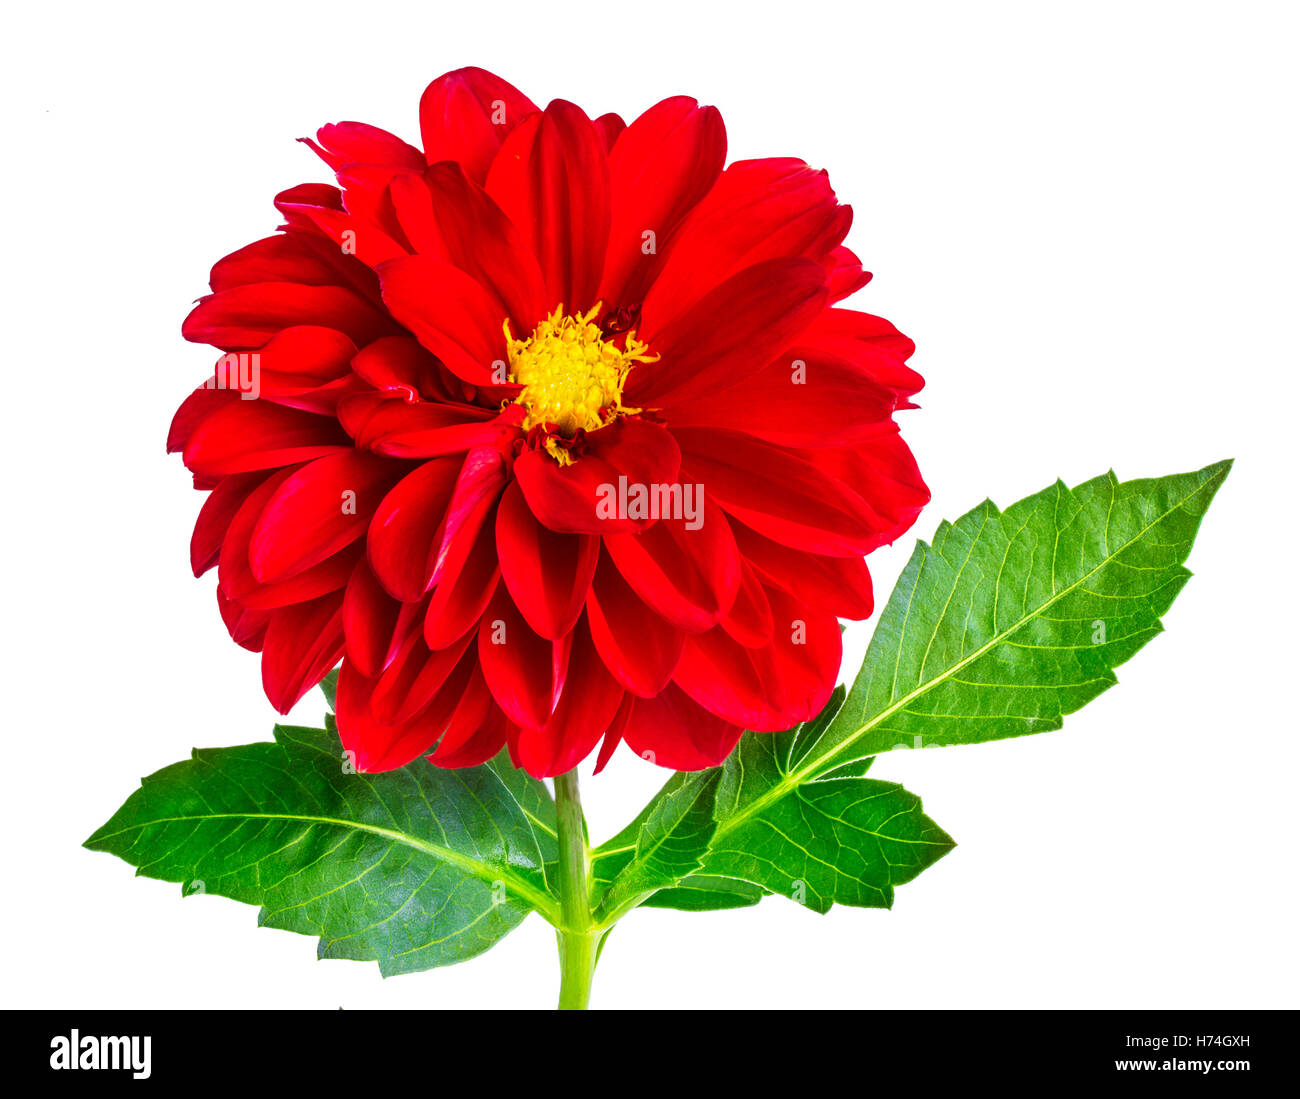 dahlia flower isolated on white background Stock Photo